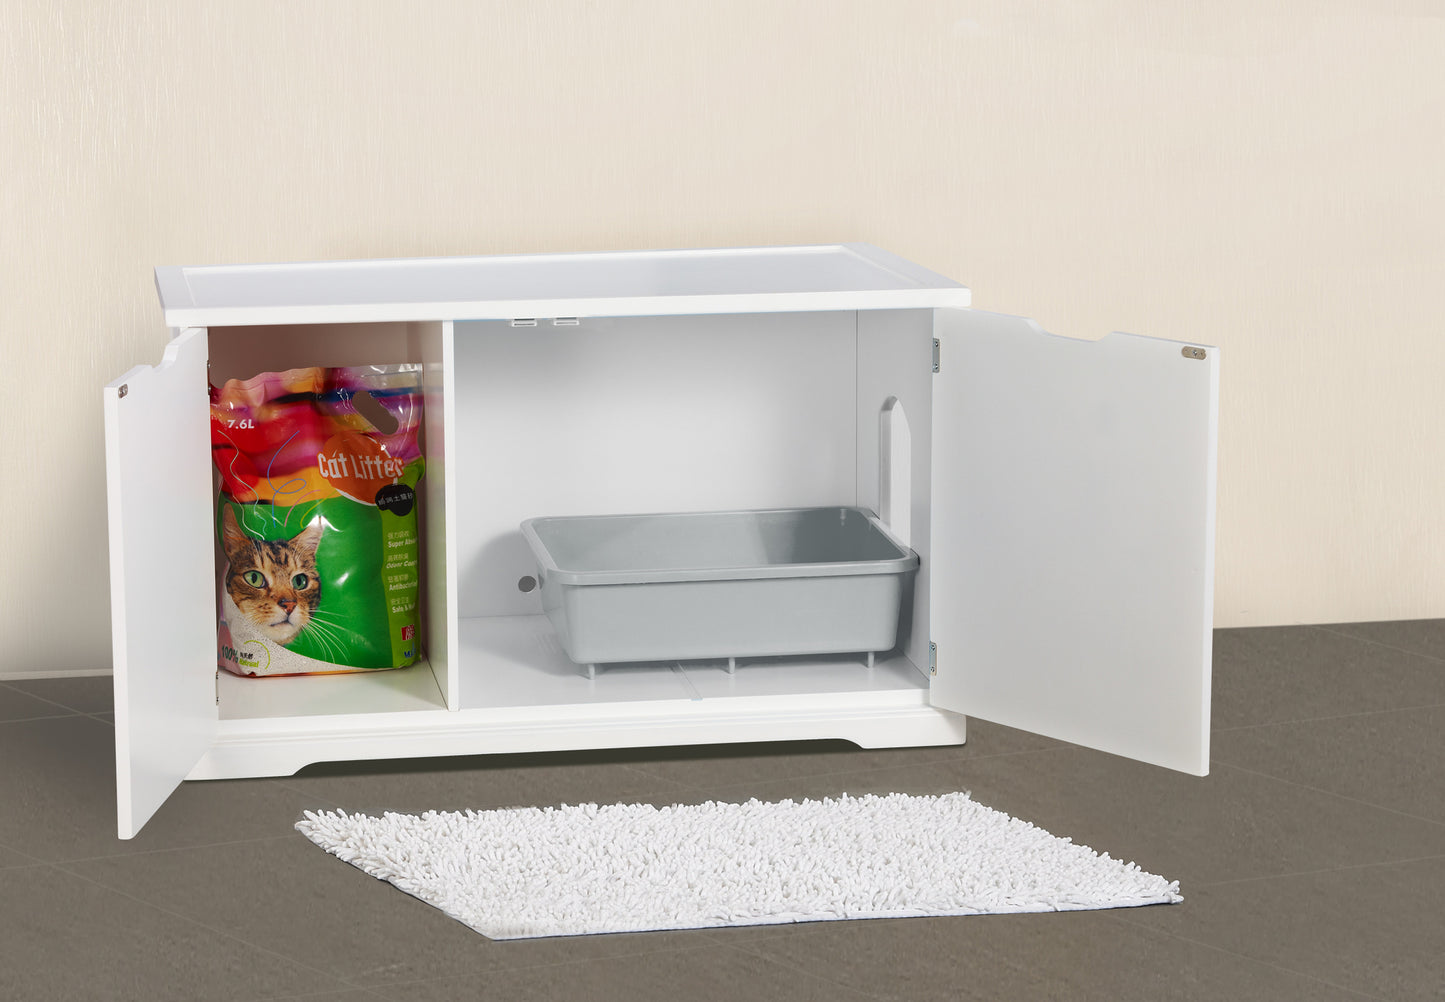 Extra-Large White Automatic Boxes Dog or Cat Washroom Bench, dog - Yardify.com